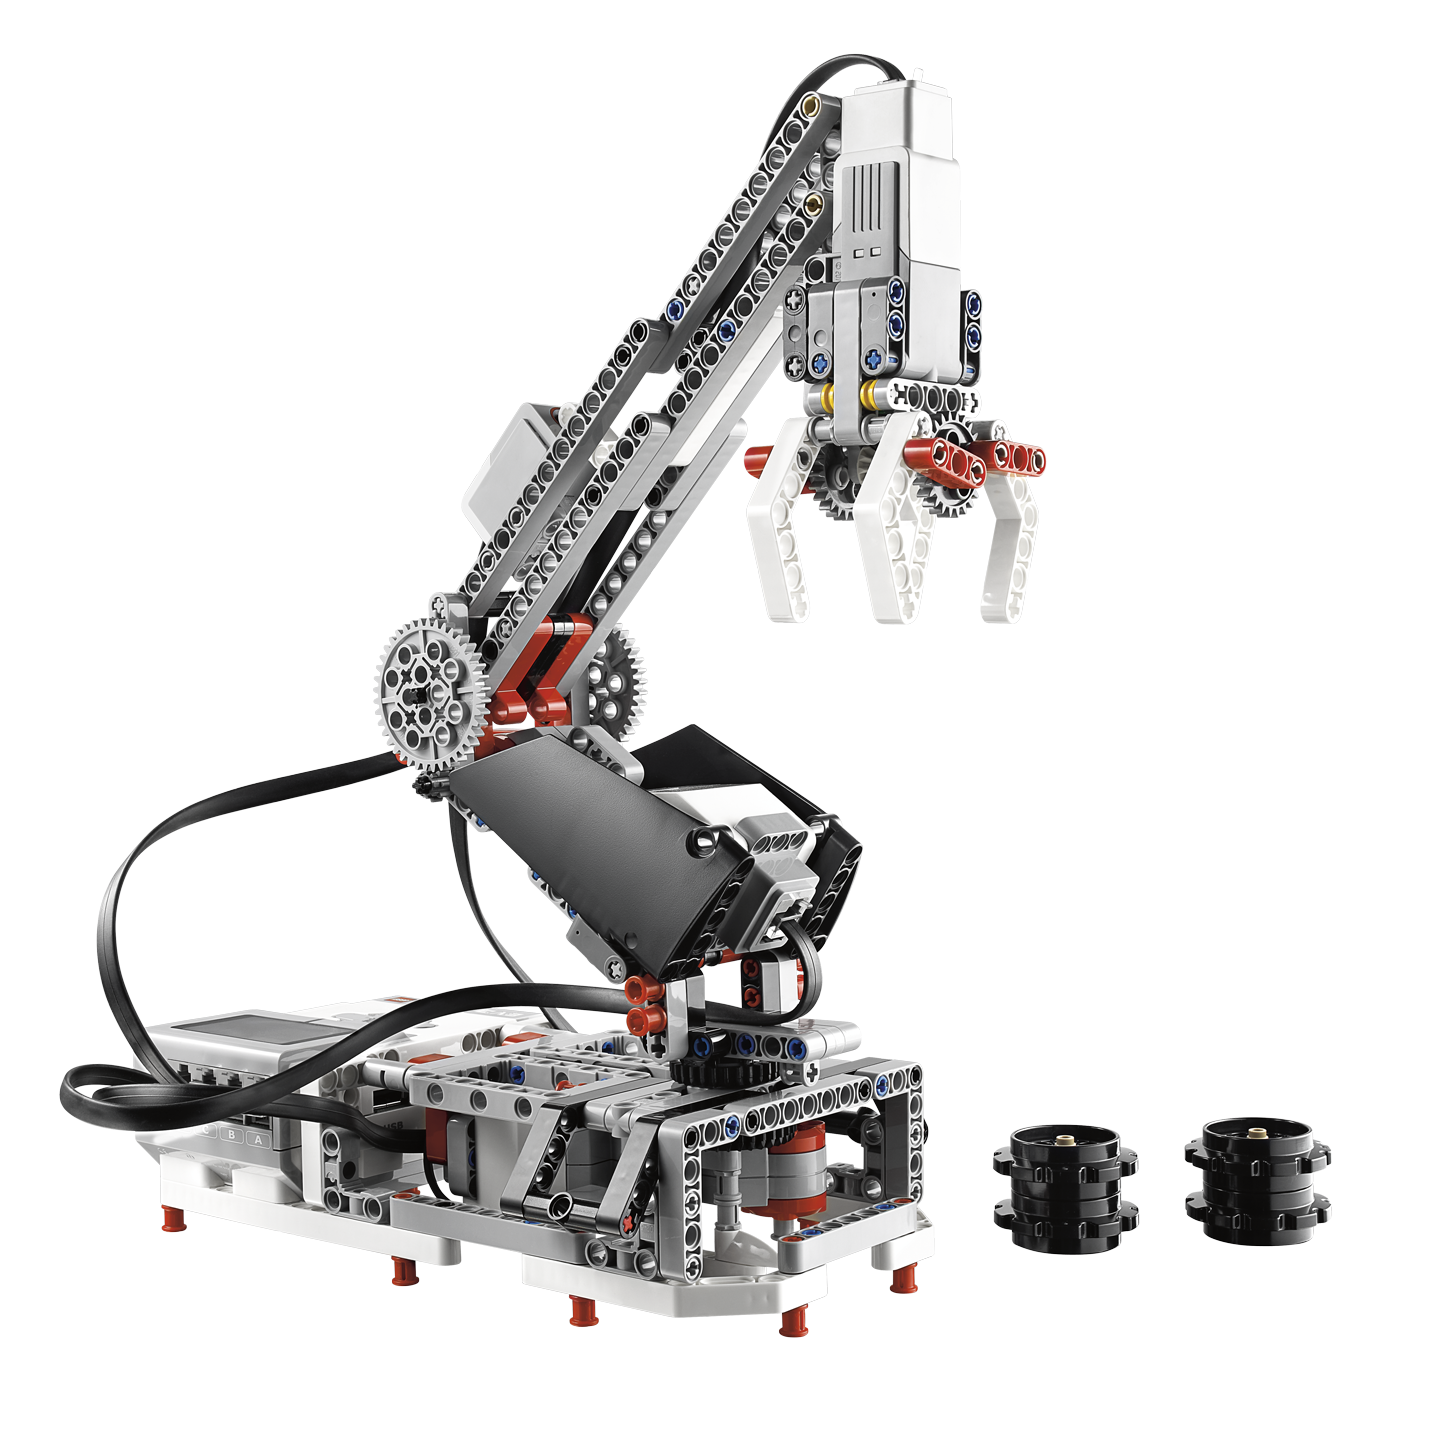 品質保証得価LEGO マインドストーム EV3 基本セット IRシーカー 拡張セット相当 知育玩具